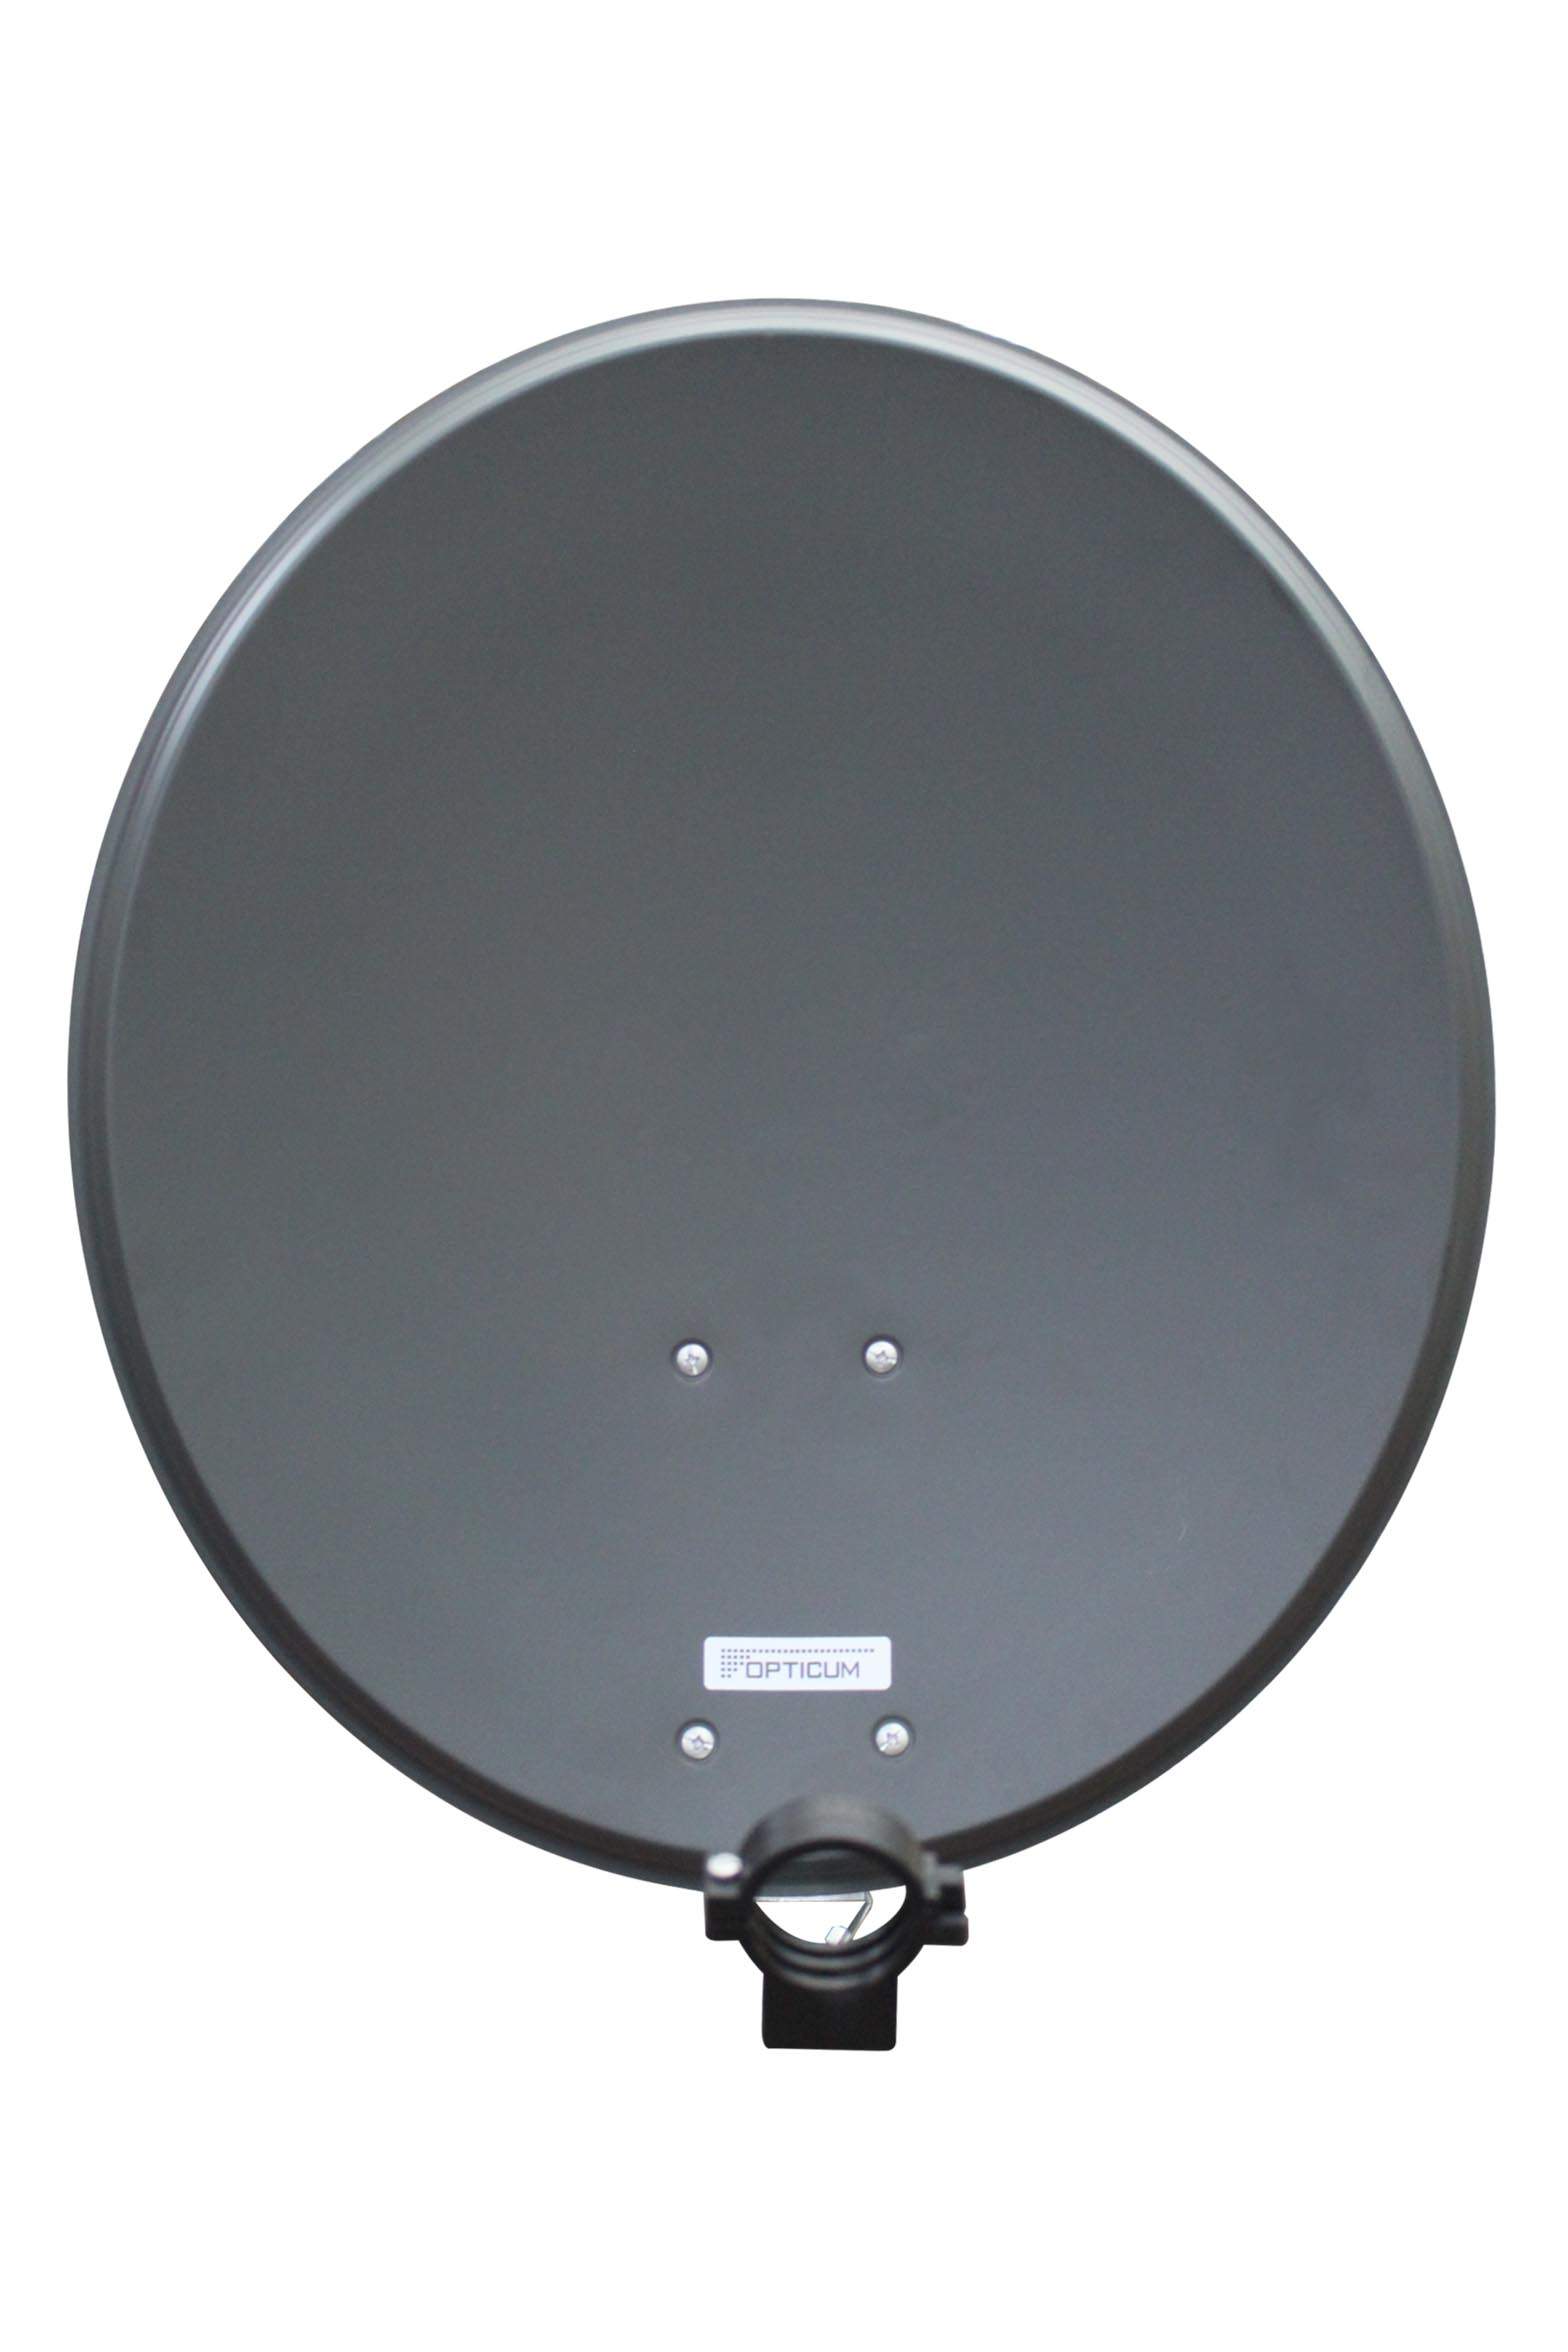 RED OPTICUM Satellitenschüssel Sat-Antenne 60cm QA60 cm Satellitenantenne - 60 Sat-Spiegel anthrazit aus Alu -Witterungsbeständige